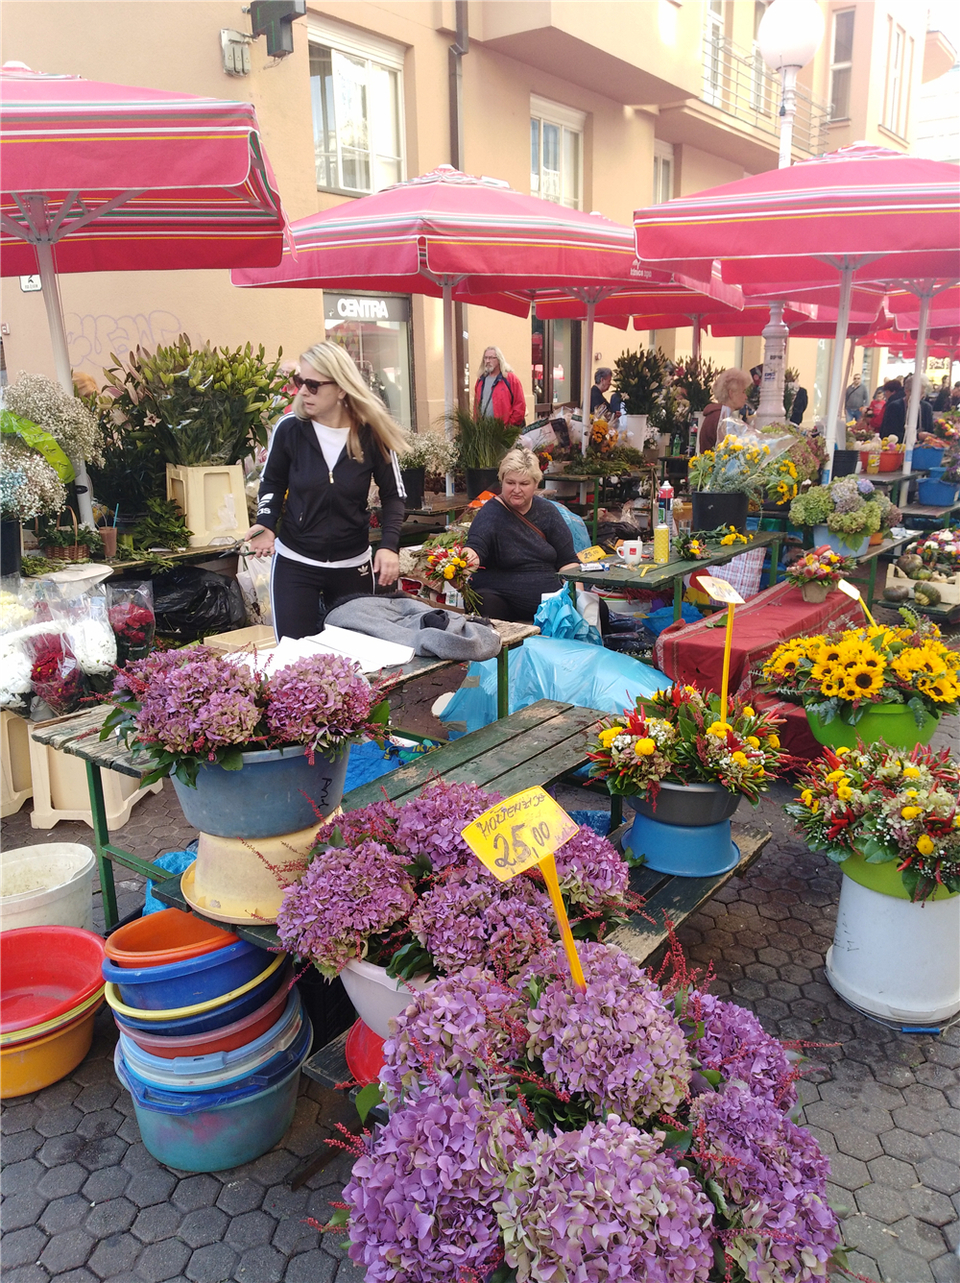 （已修改）【图片专题】克罗地亚萨格勒布街头的鲜花摊位